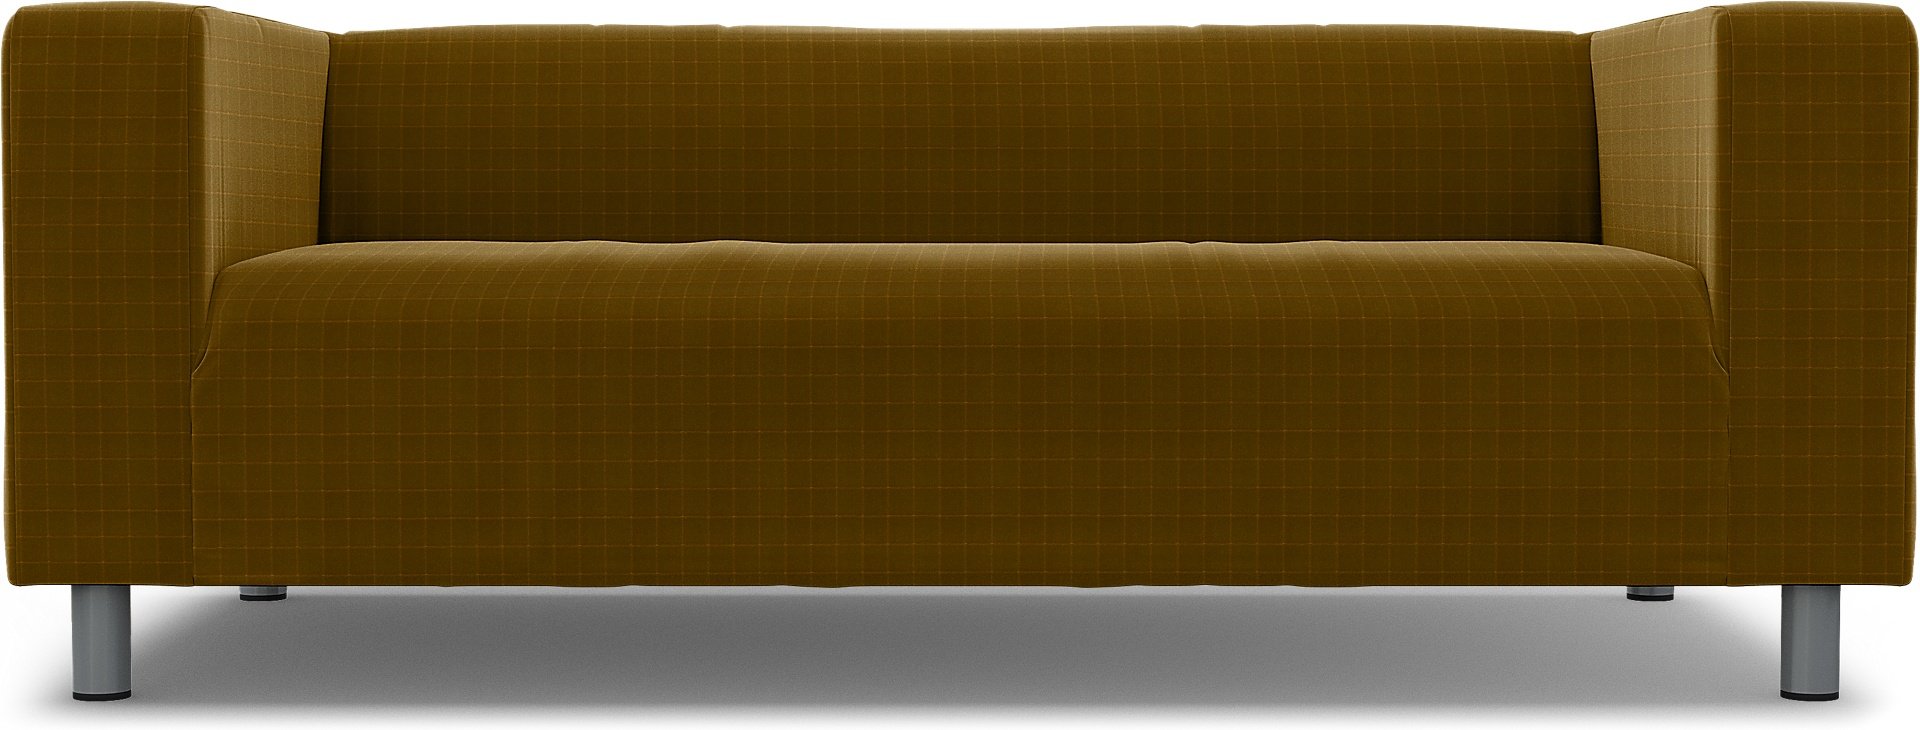 IKEA - Klippan 2 Seater Sofa Cover, Turmeric, Velvet - Bemz